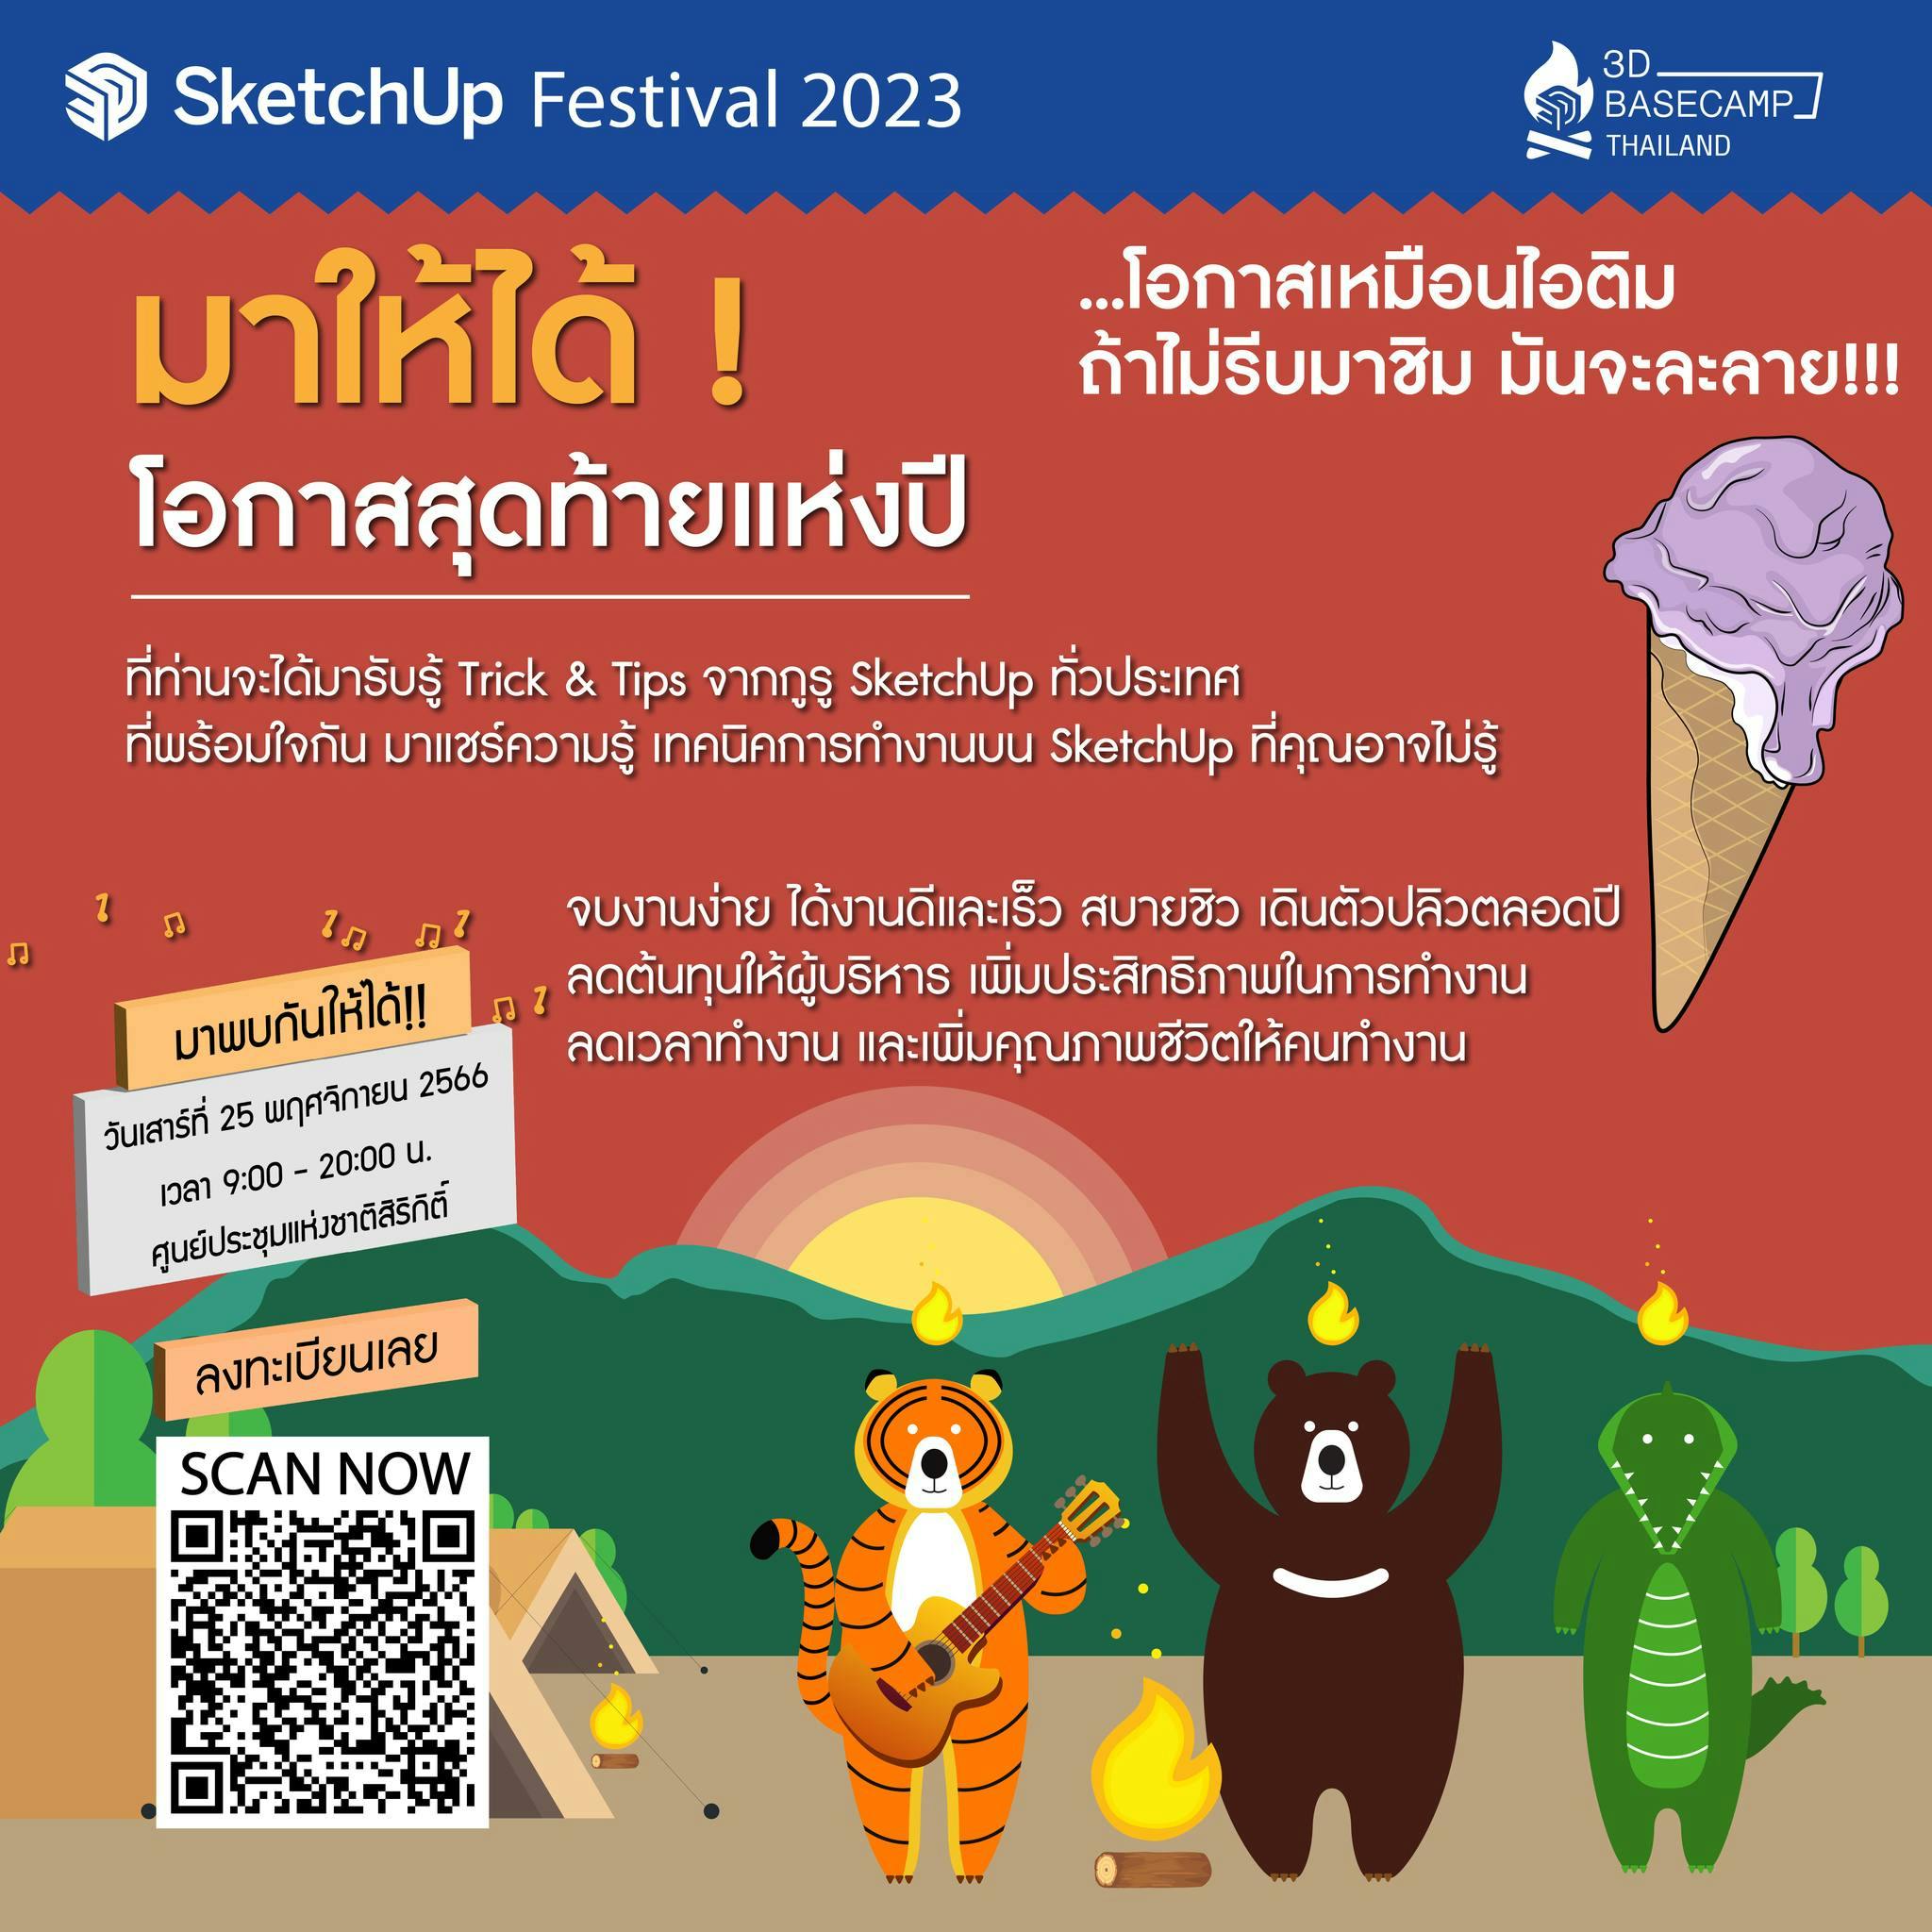 SketchUp Festival & 3D BASECAMP